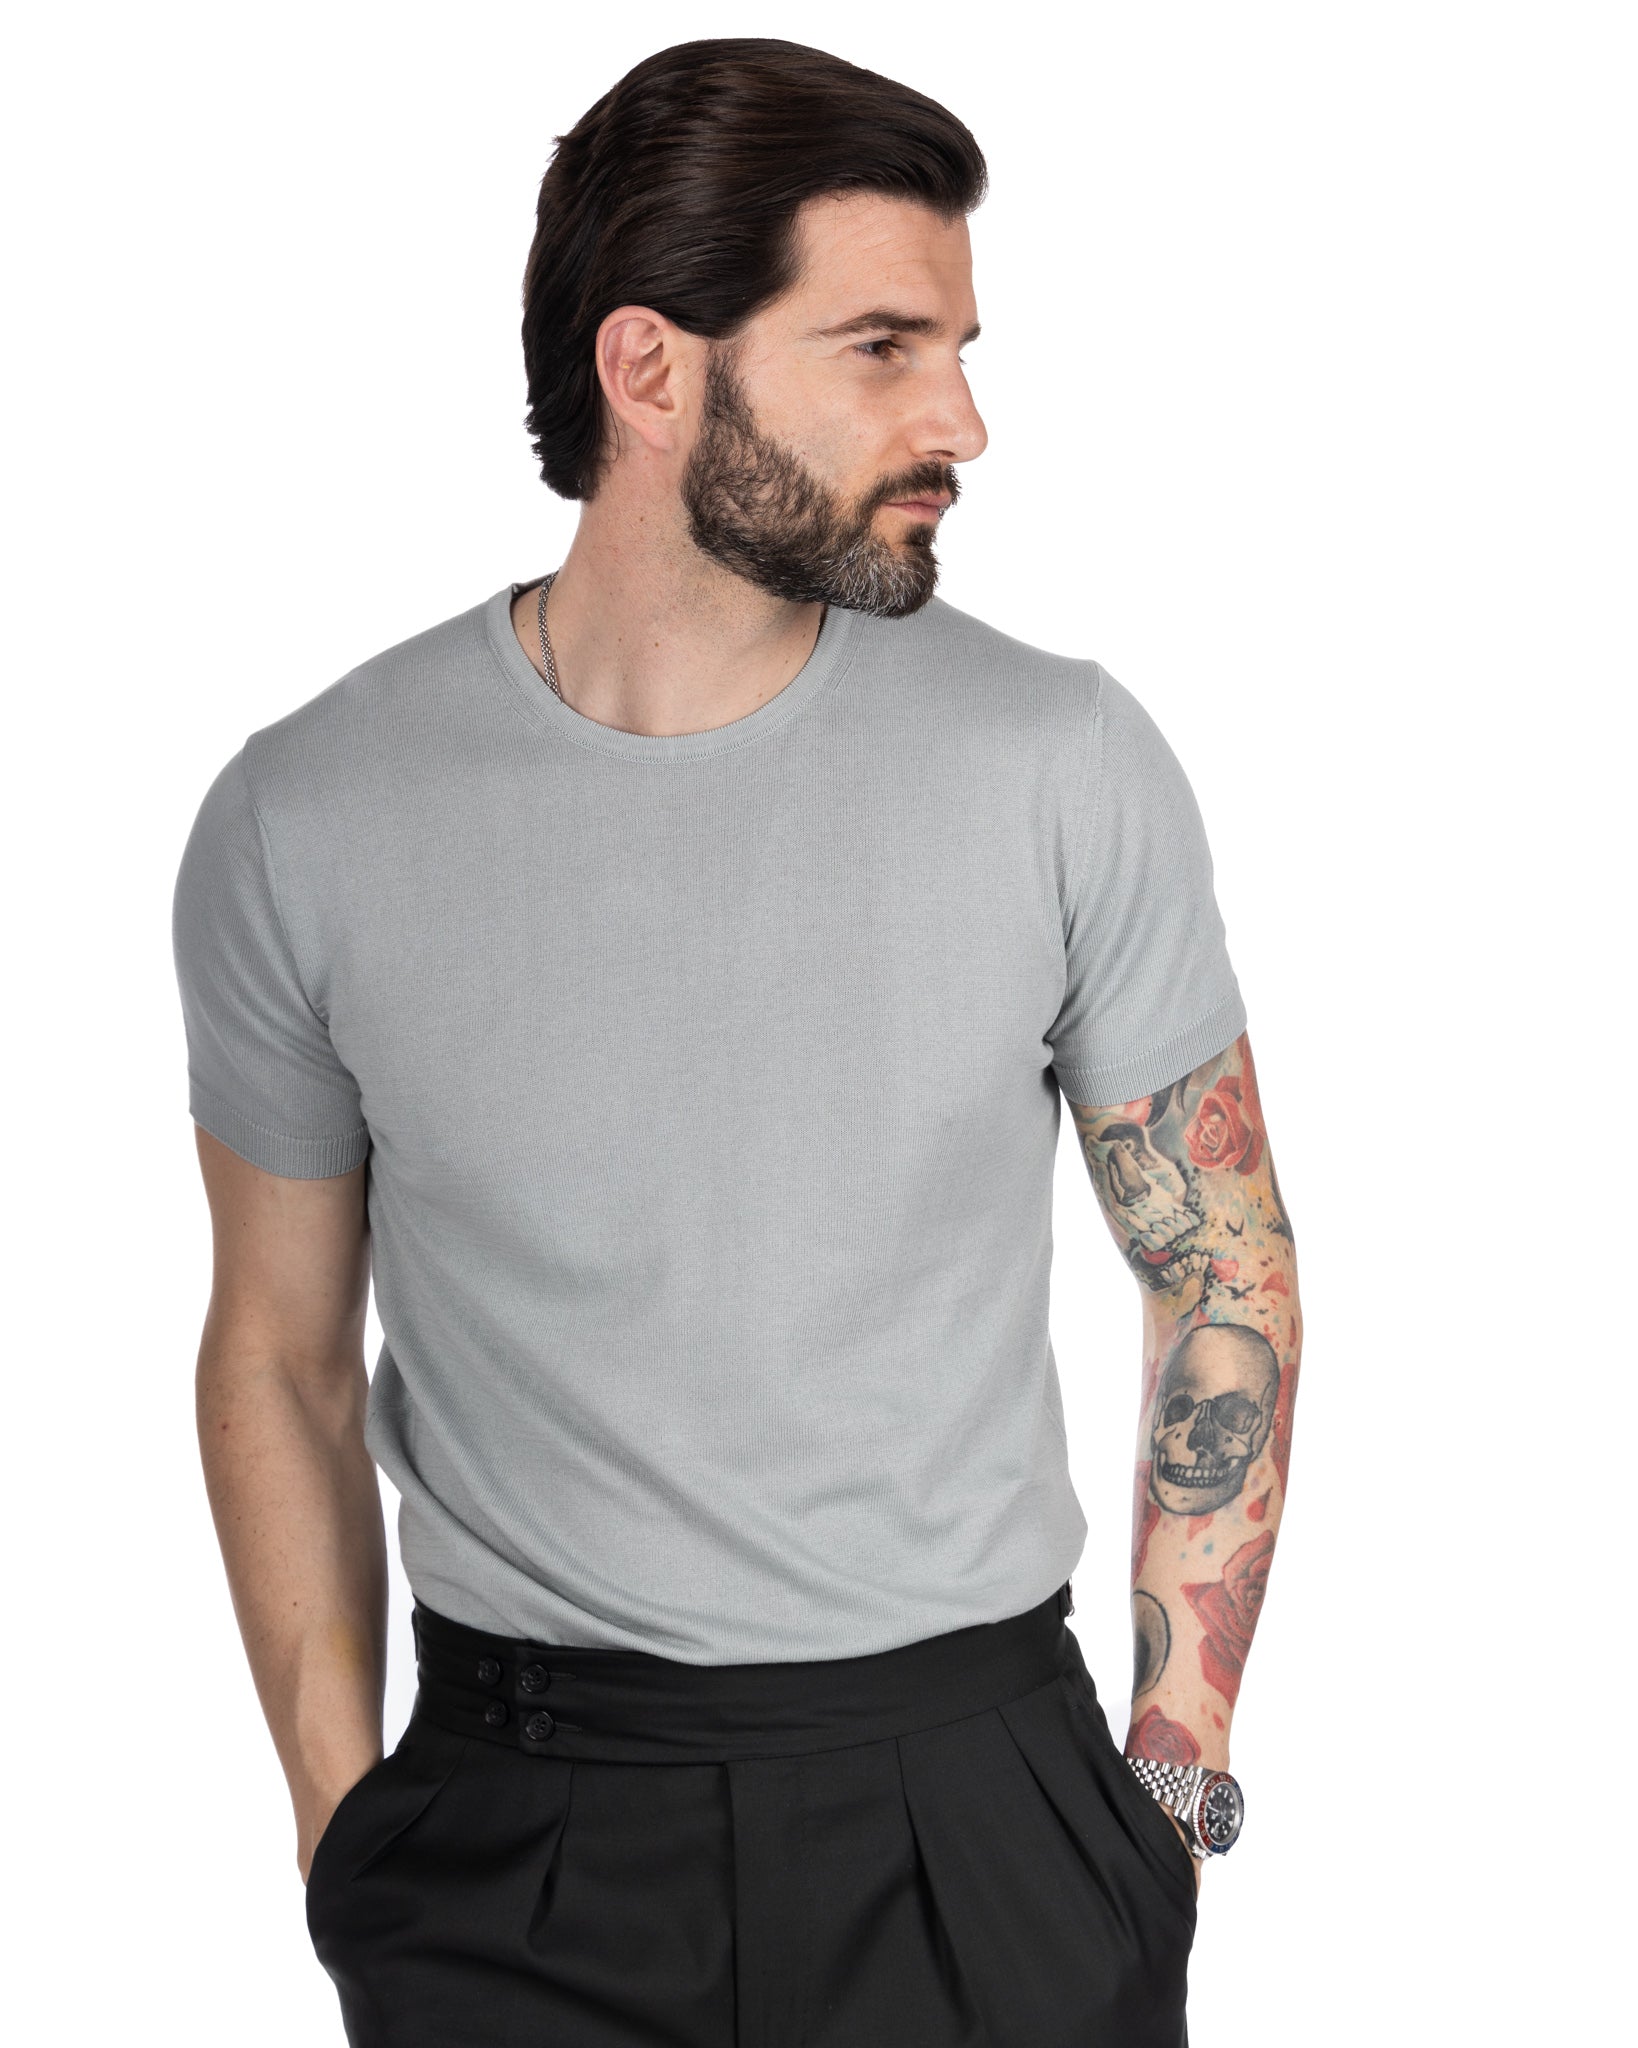 Jannik - light gray knitted t-shirt